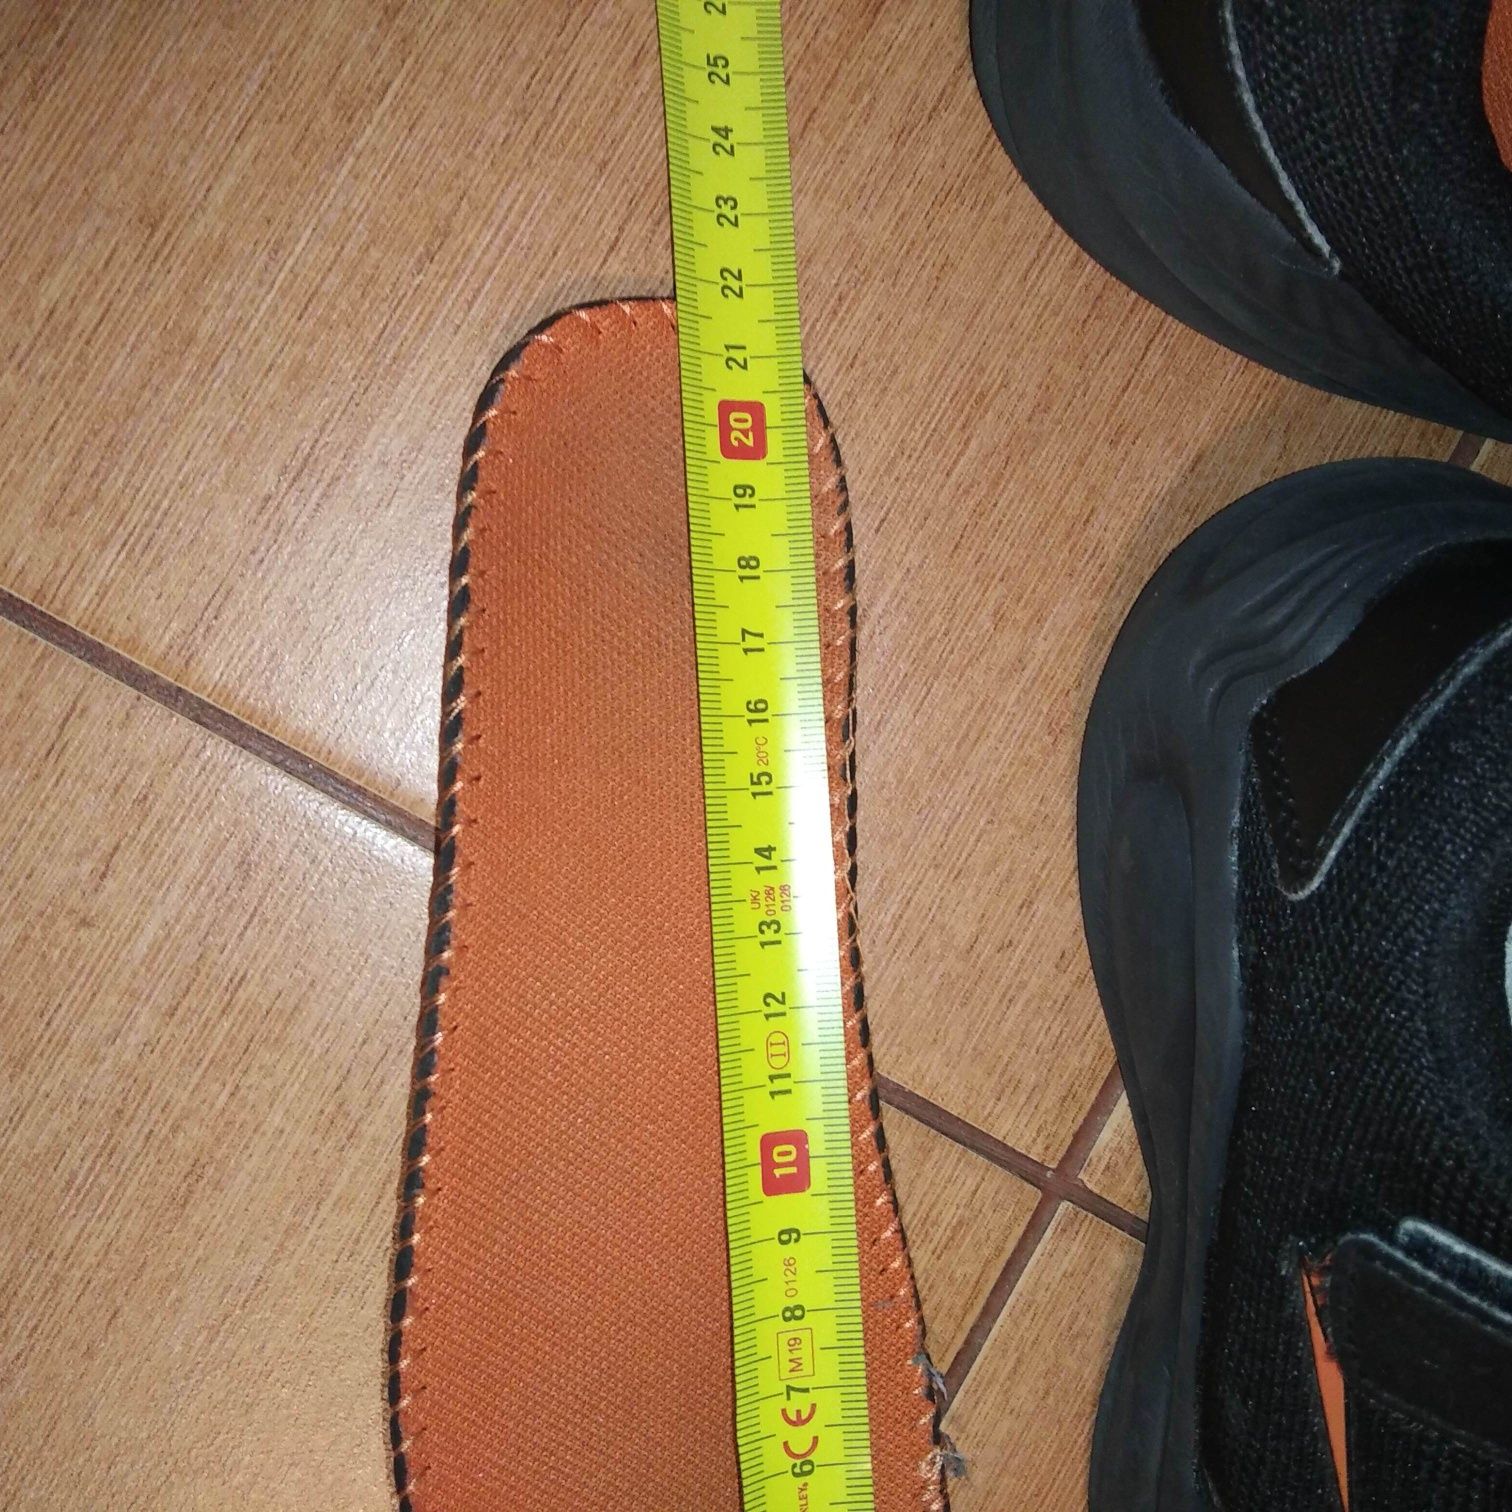 Buty rozmiar 33 czarne 21.5 cm w bardzo dobrym stanie